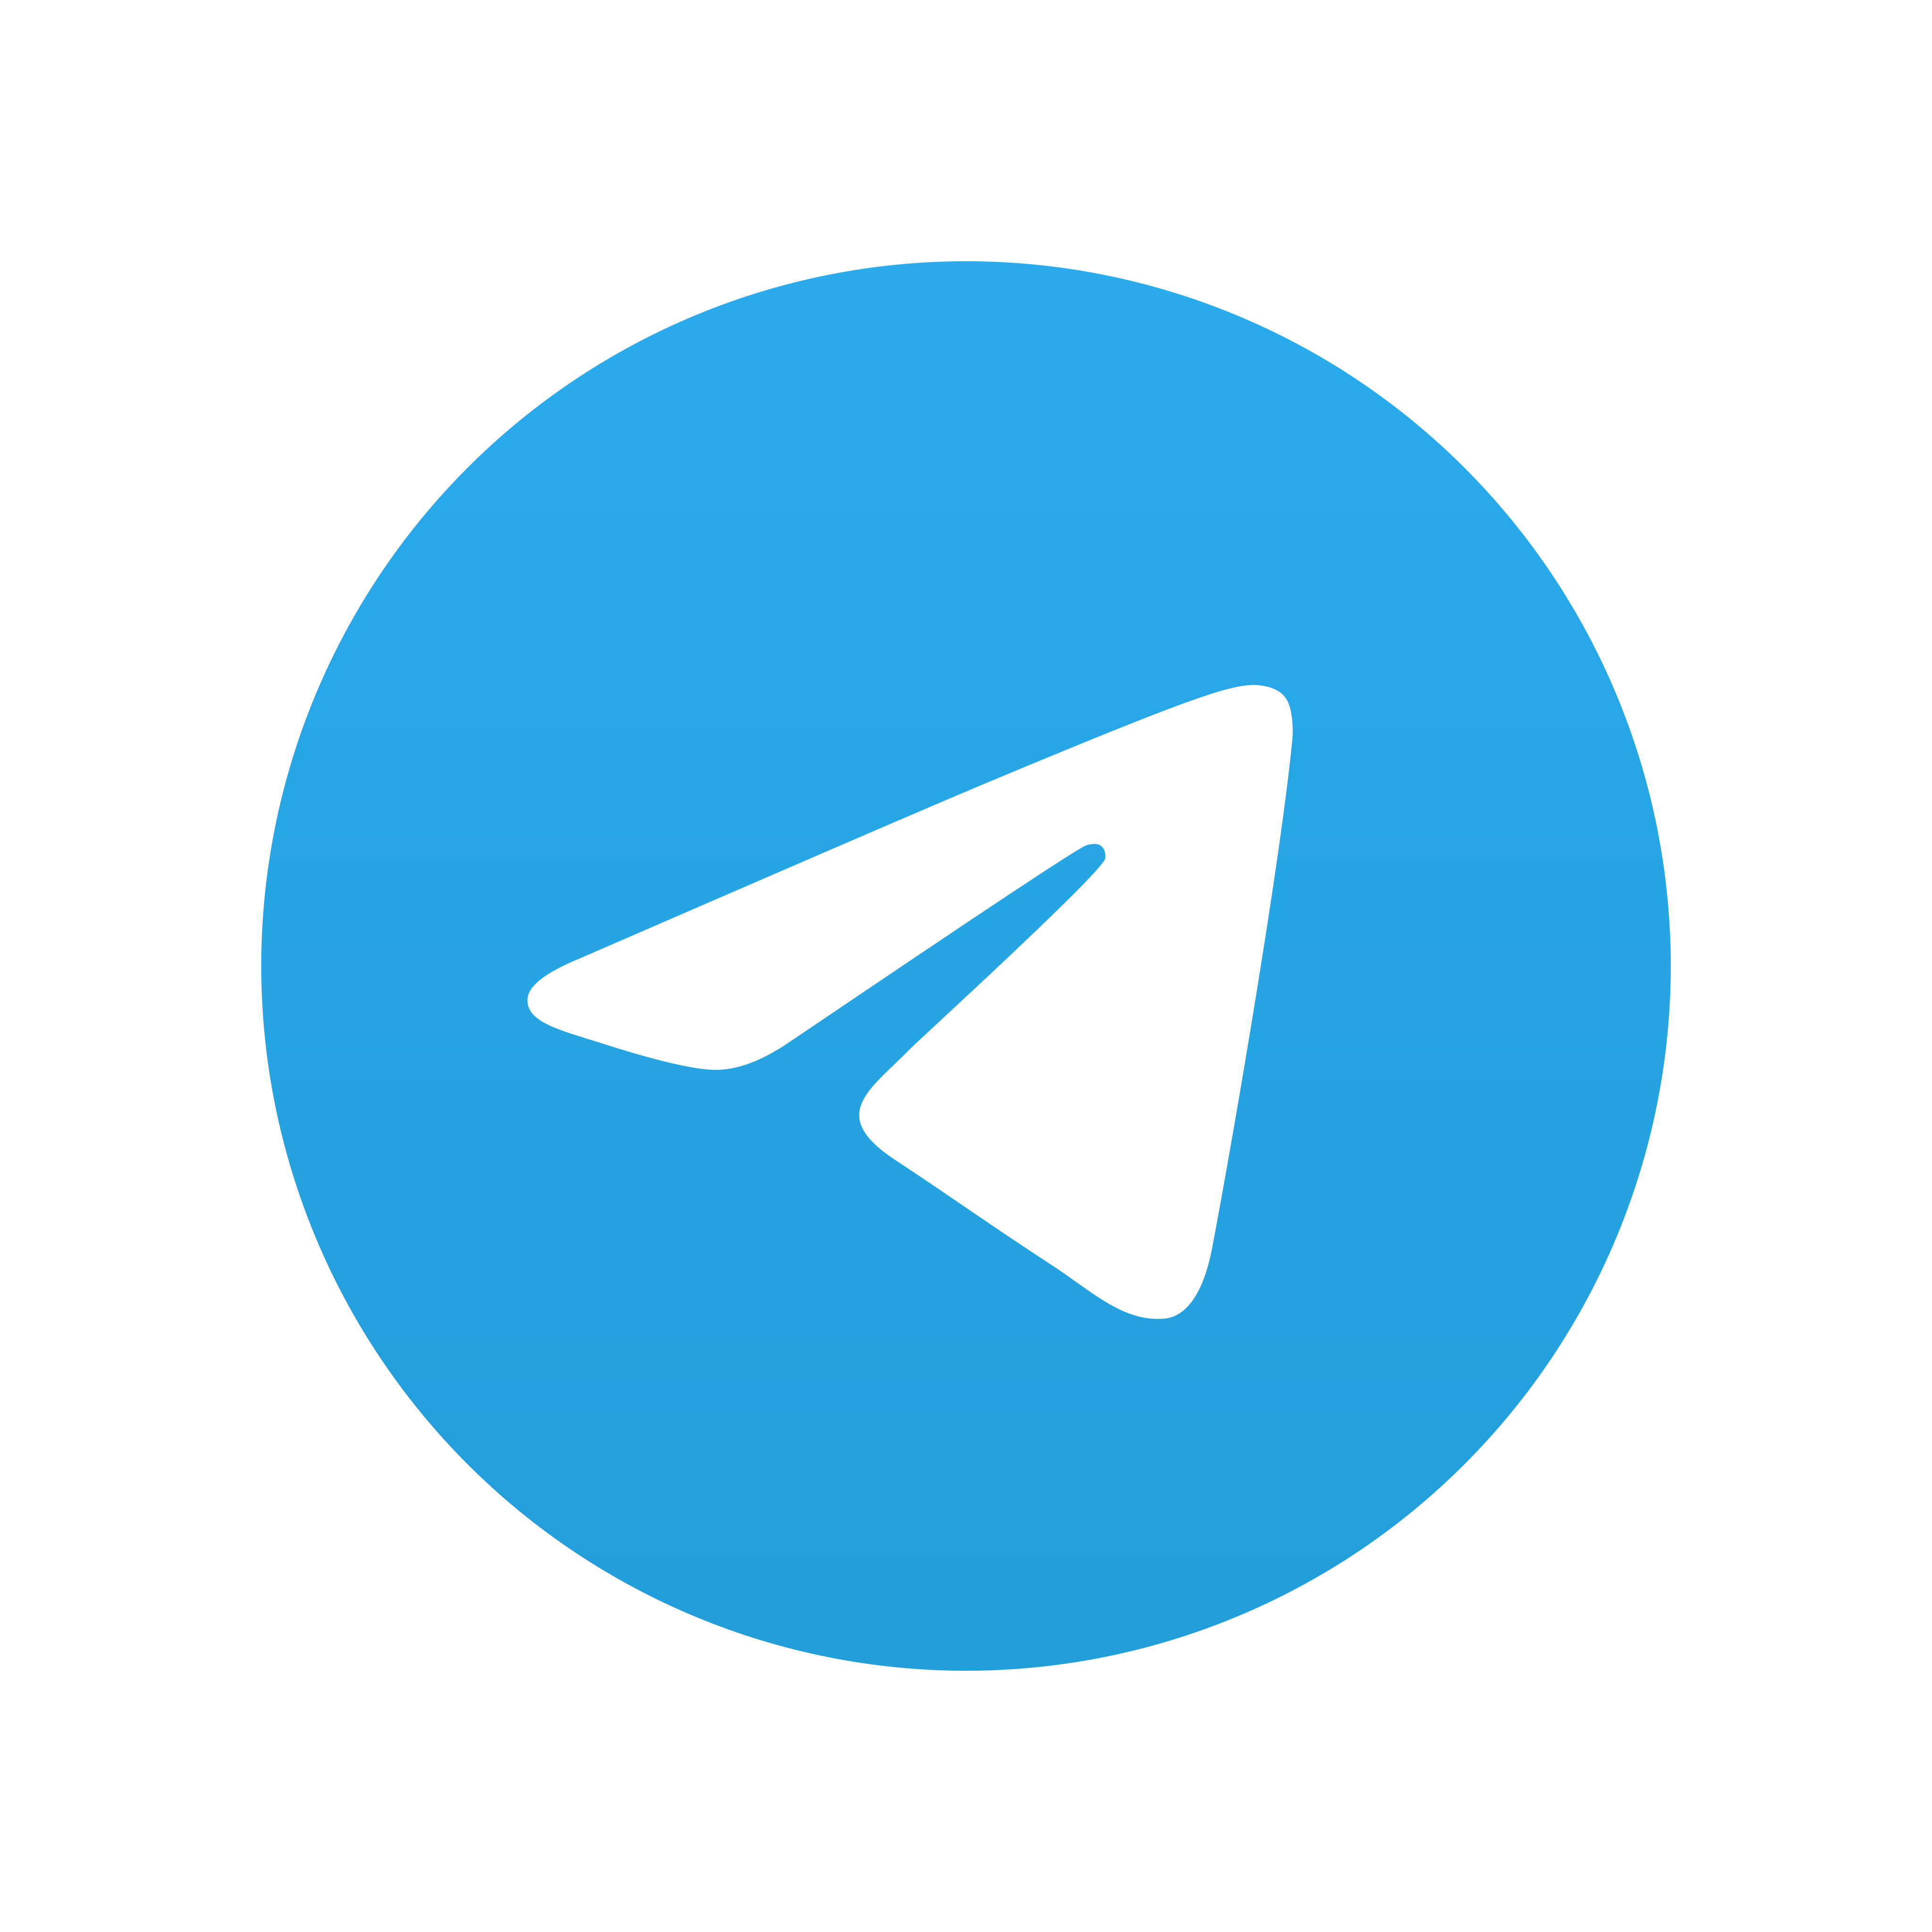 telegram logo 0 2 - Telegram Logo